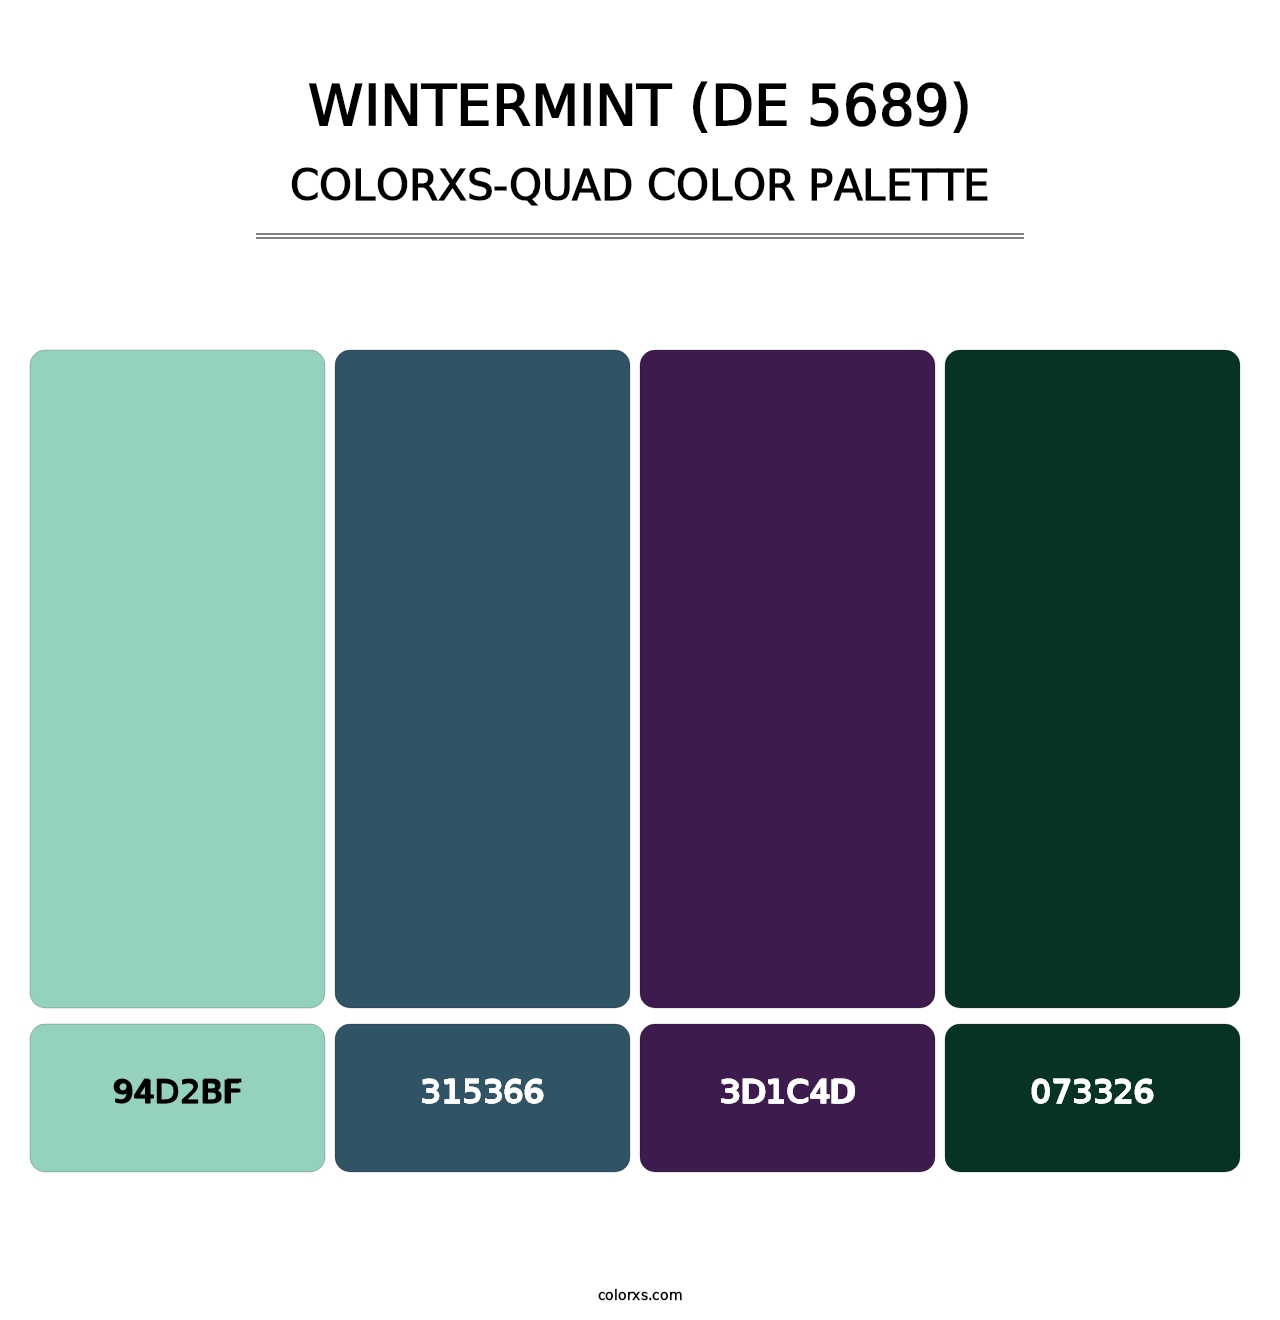 Wintermint (DE 5689) - Colorxs Quad Palette